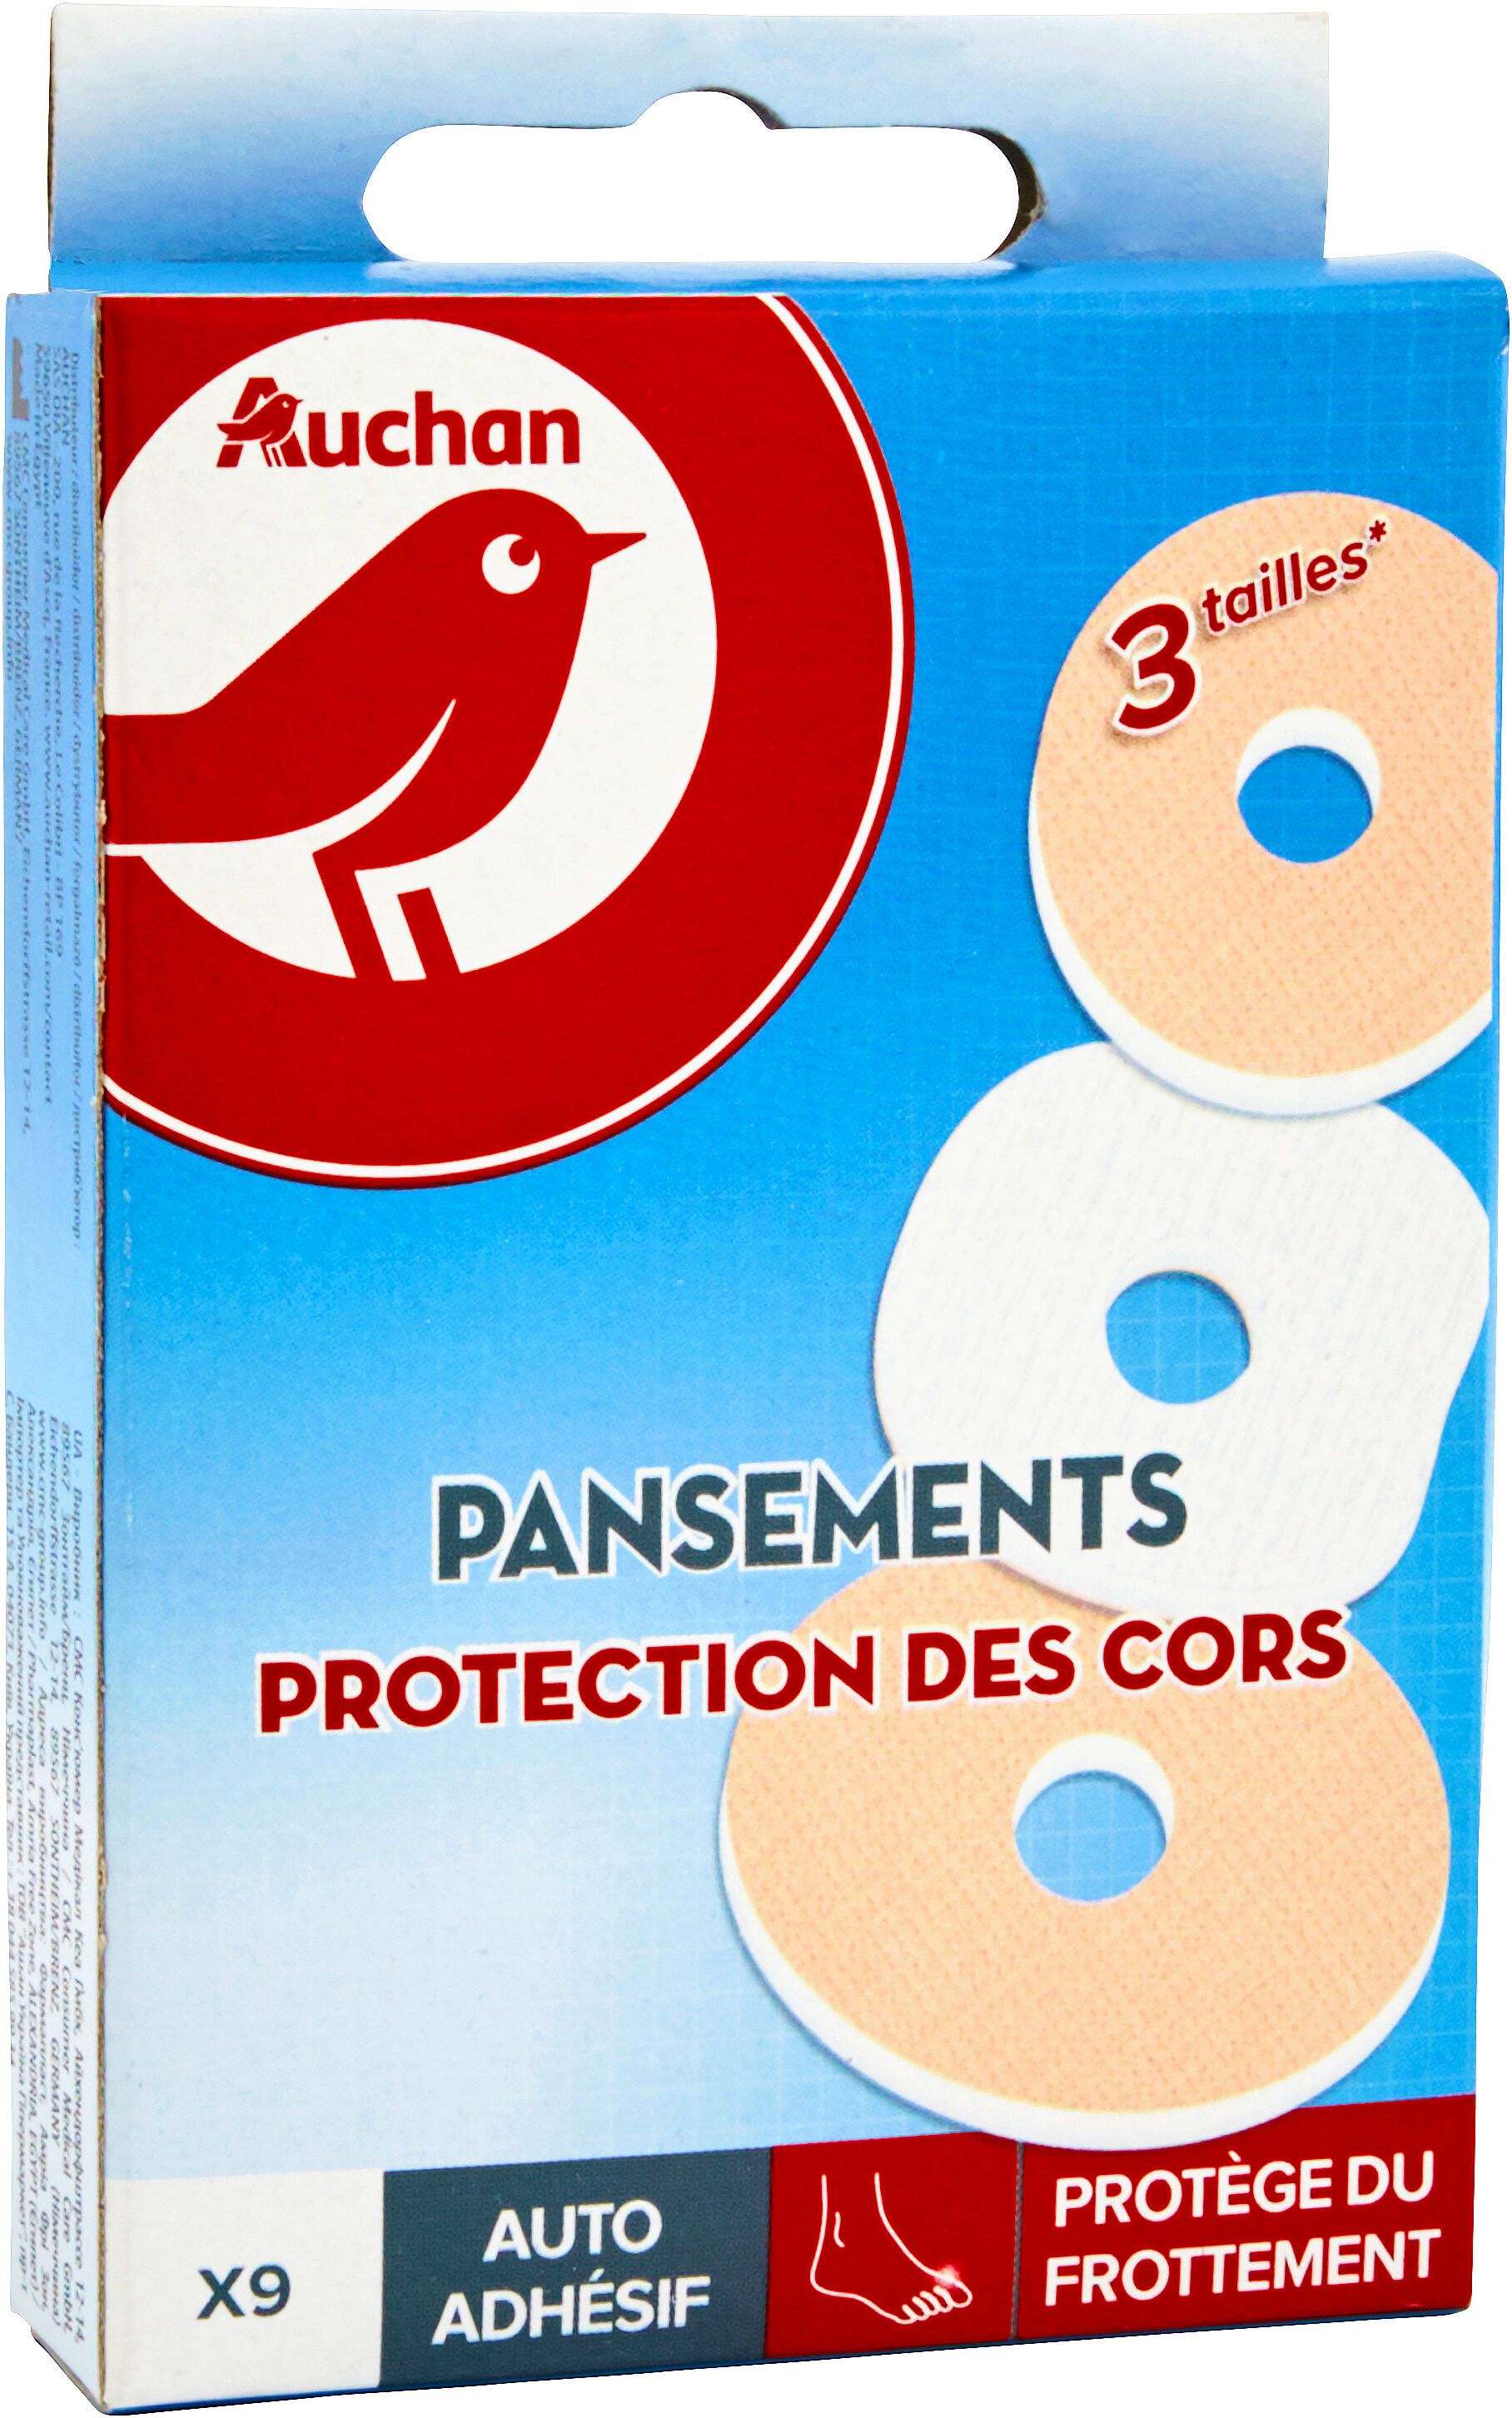 Pansements protection des cors x9 - Product - fr